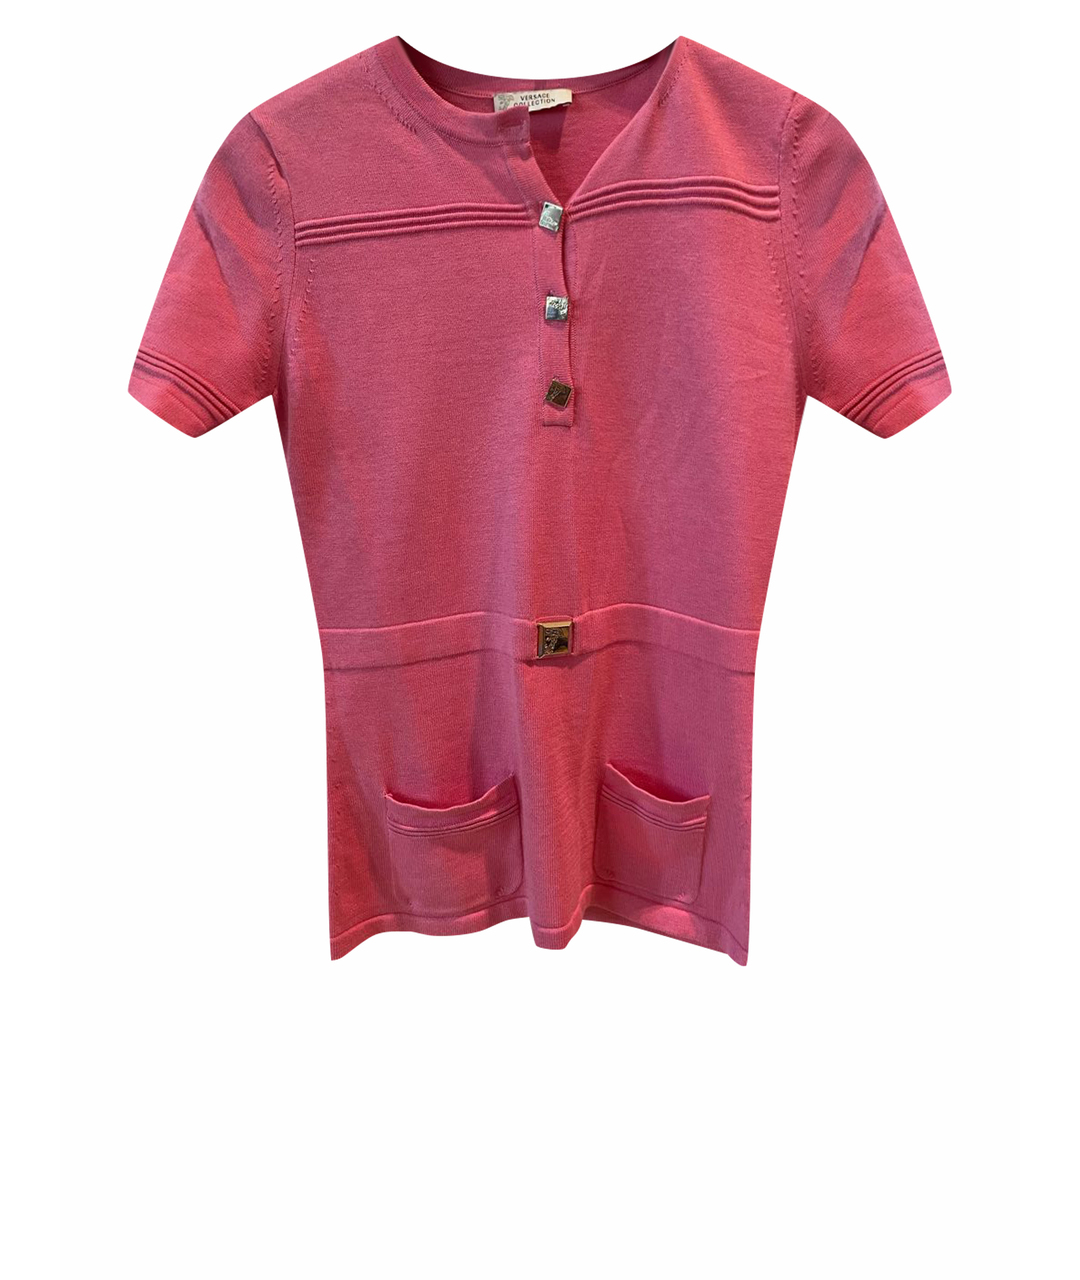 VERSACE COLLECTION Розовый хлопковый джемпер / свитер, фото 1